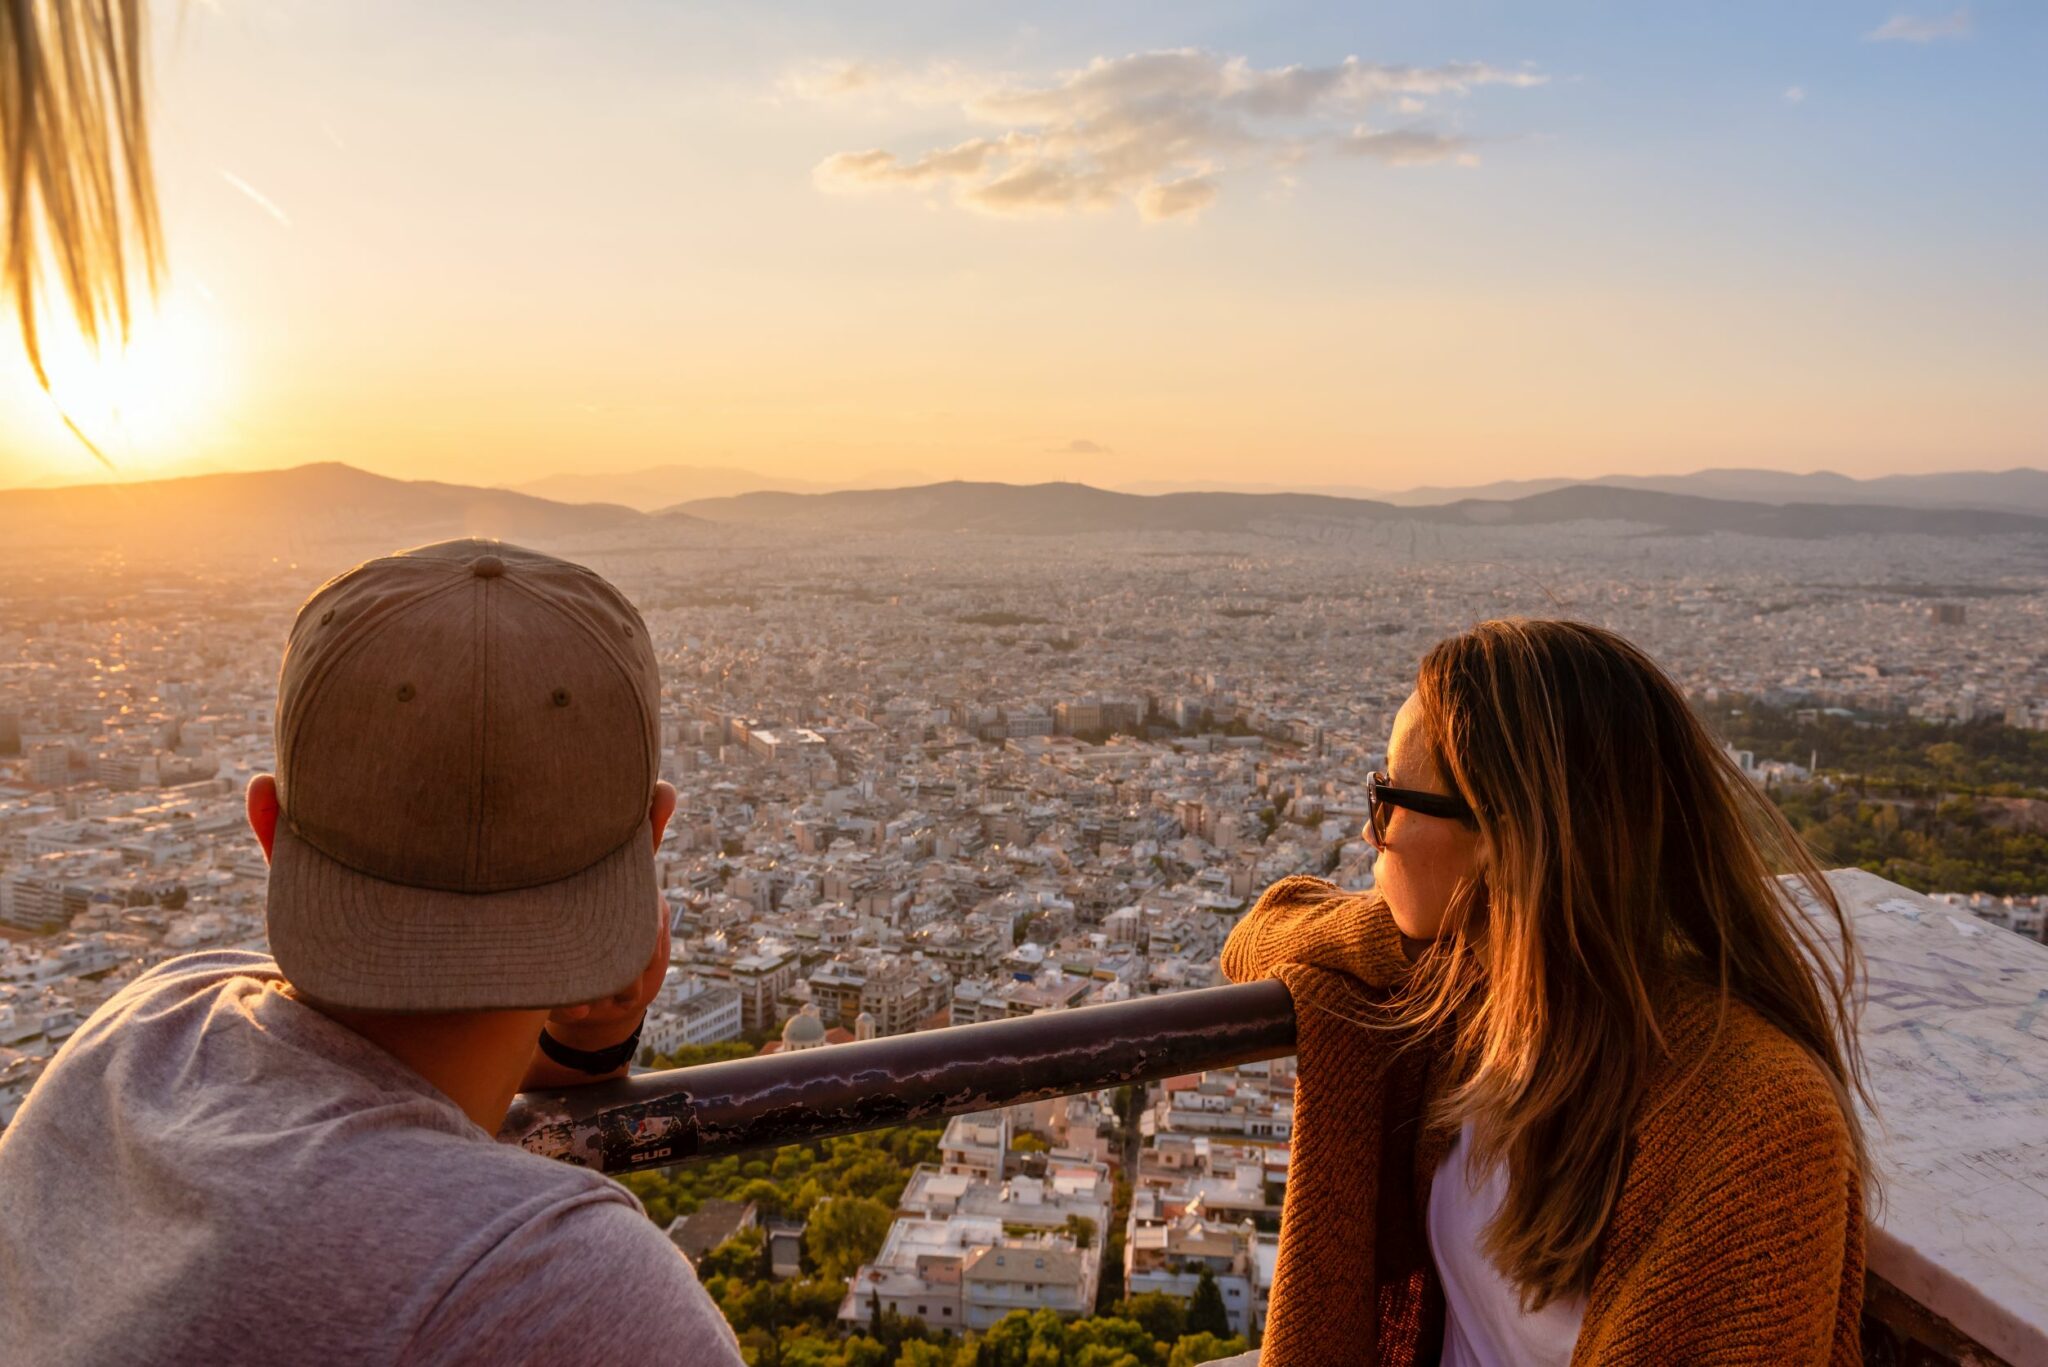 Ο νέος τίτλος που προτείνω γιαείναι: "Ιδιαίτερη επιτυχία για τον ελληνικό τουρισμό: Οι Βρετανοί ξόδεψαν πάνω από 20 δισεκατομμύρια ευρώ σε διακοπές στην Ελλάδα τα τελευταία 10 χρόνια"
